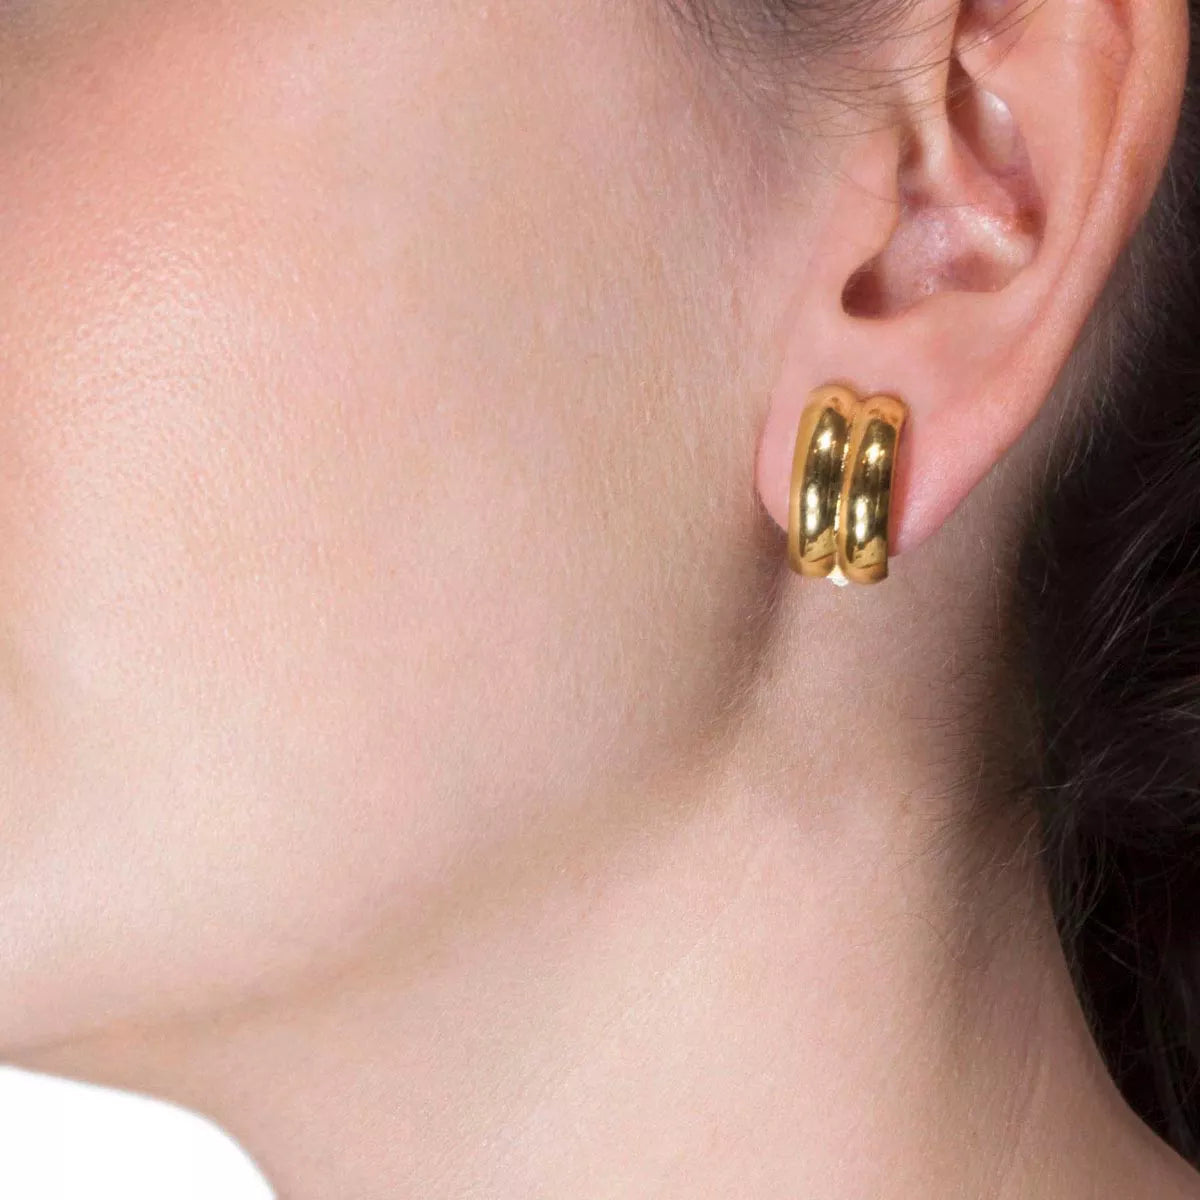 2 semicircle earrings